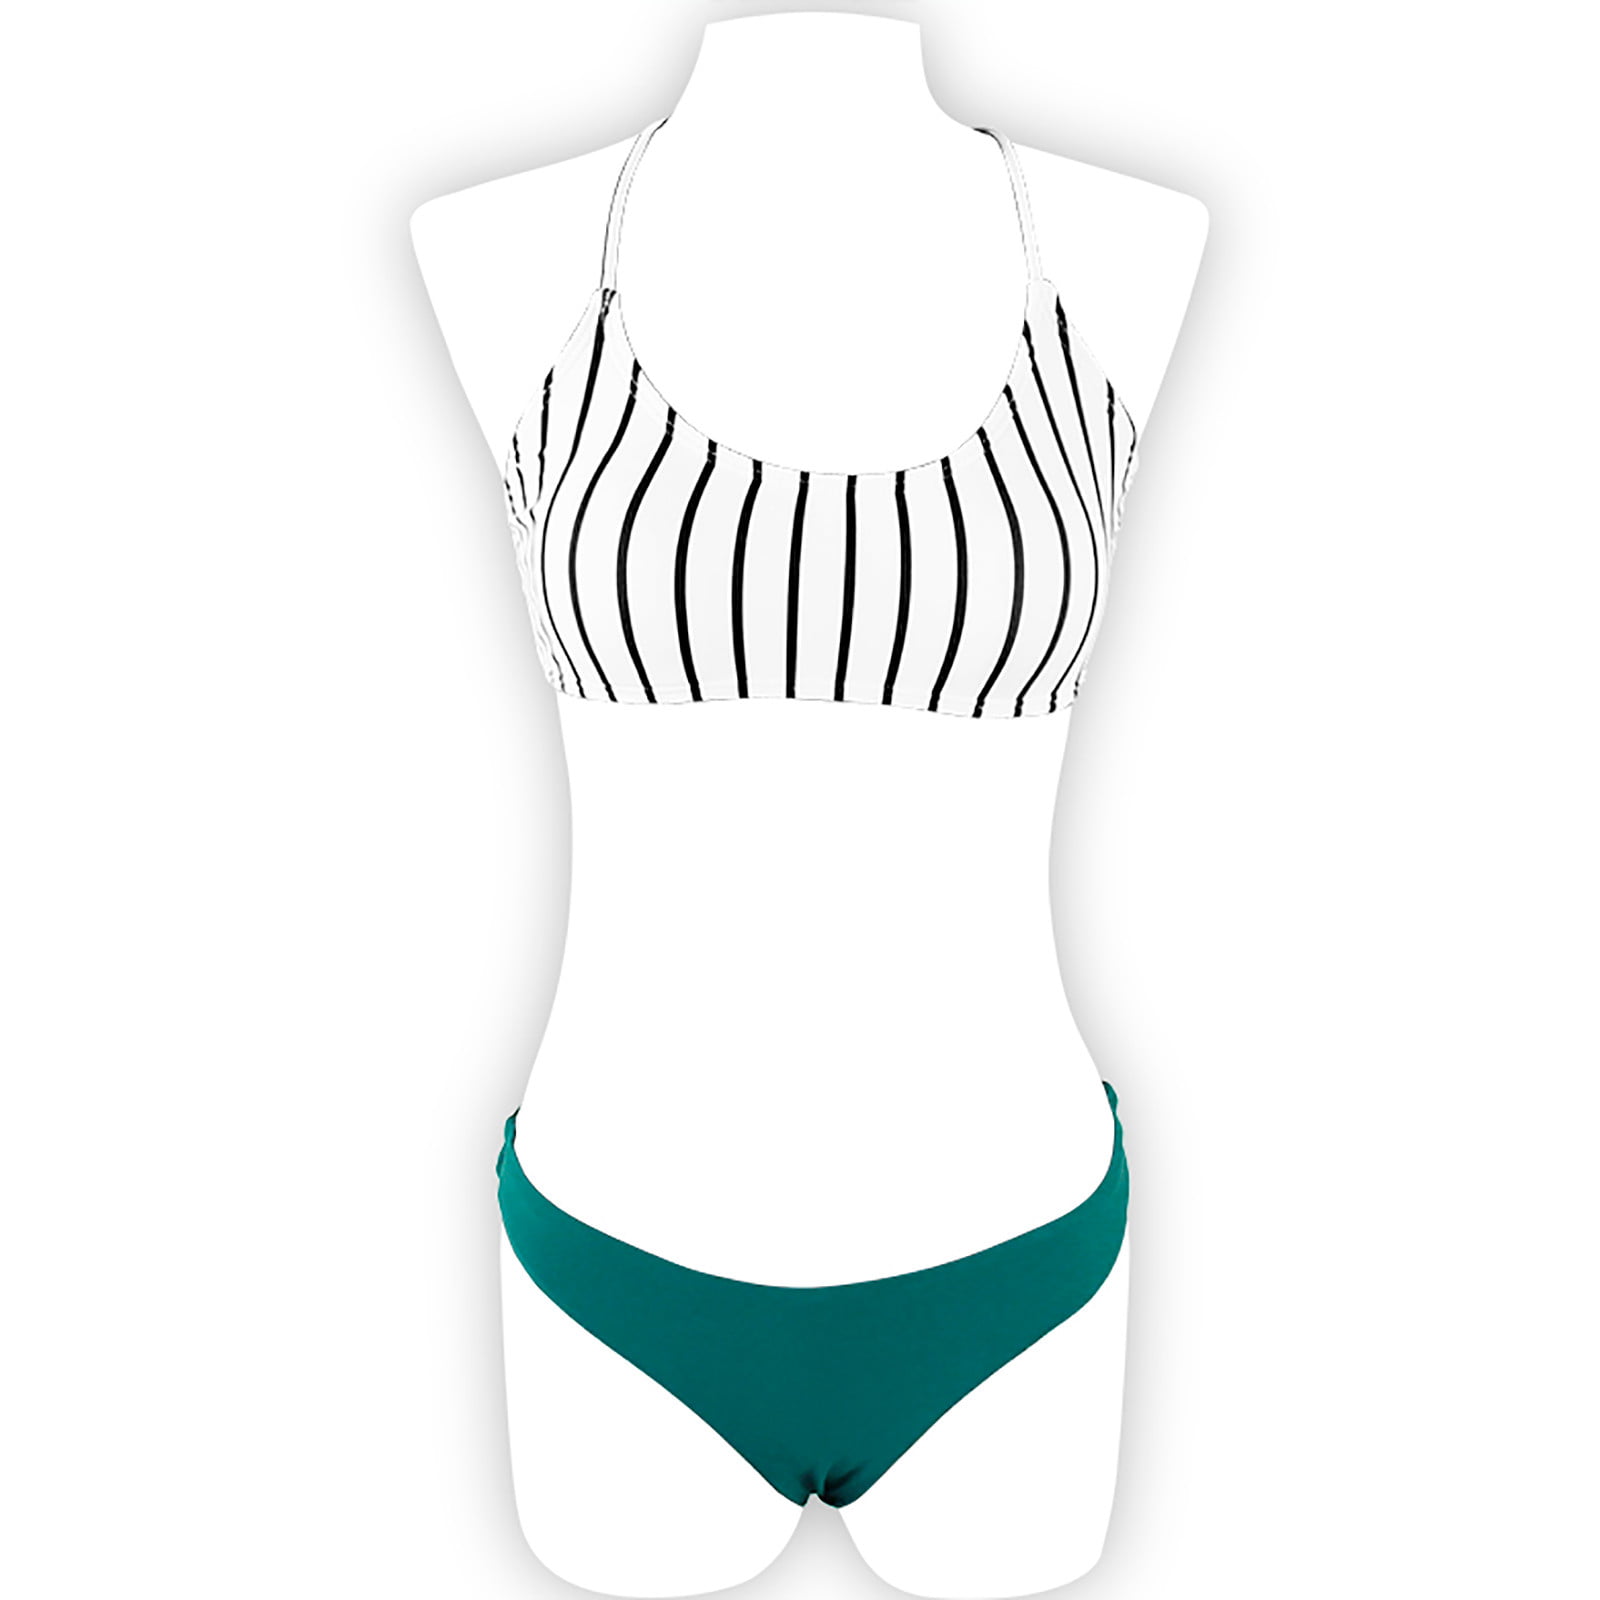 Czhjs Women S Thong Bikini Clearance Swimsuit For Women Striped Cheeky Two Piece Swimwear High